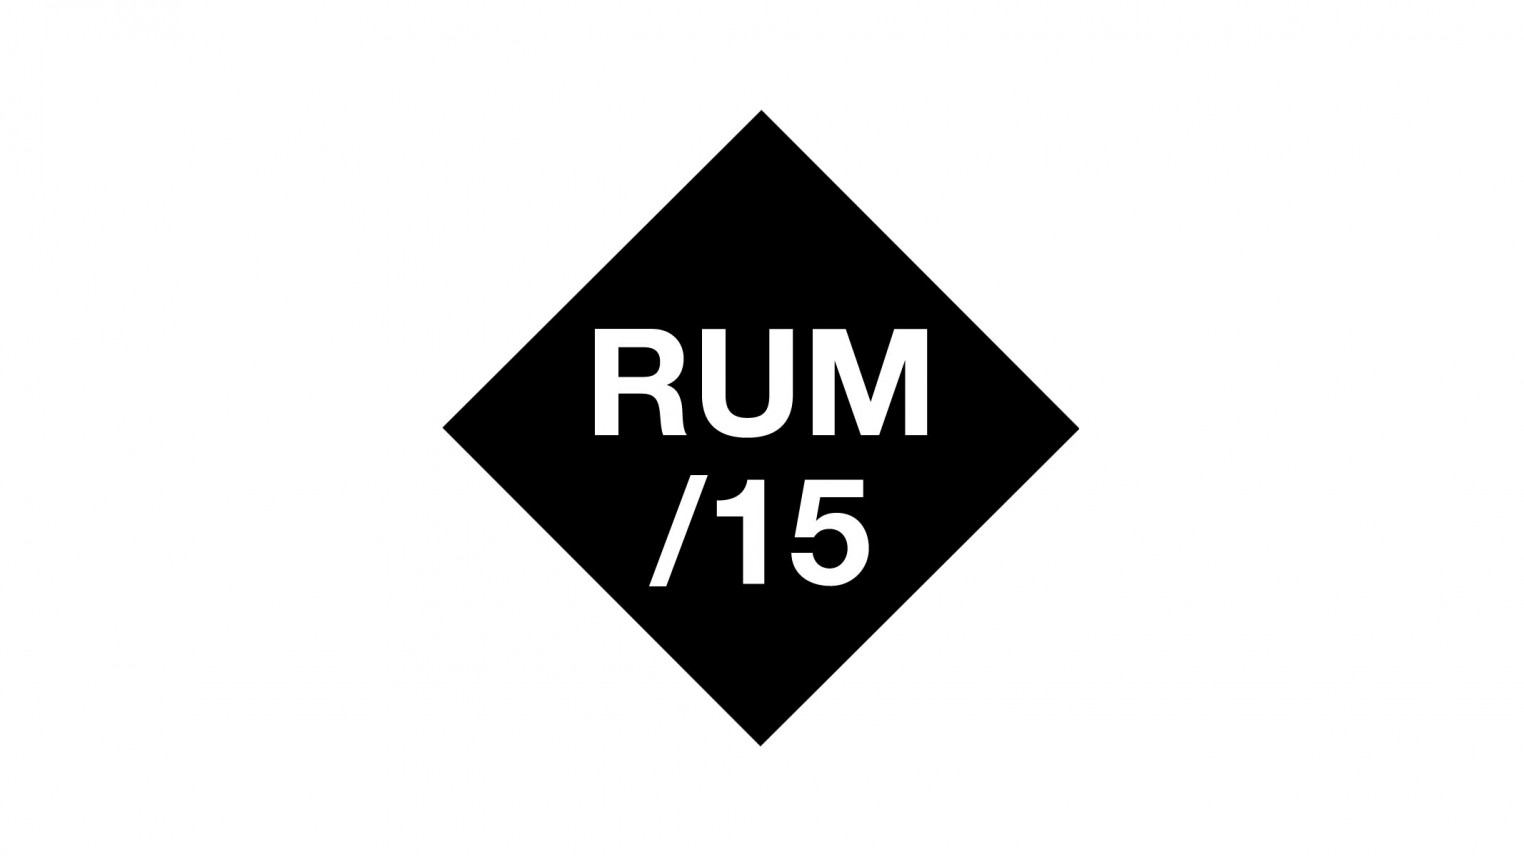 Rum/15